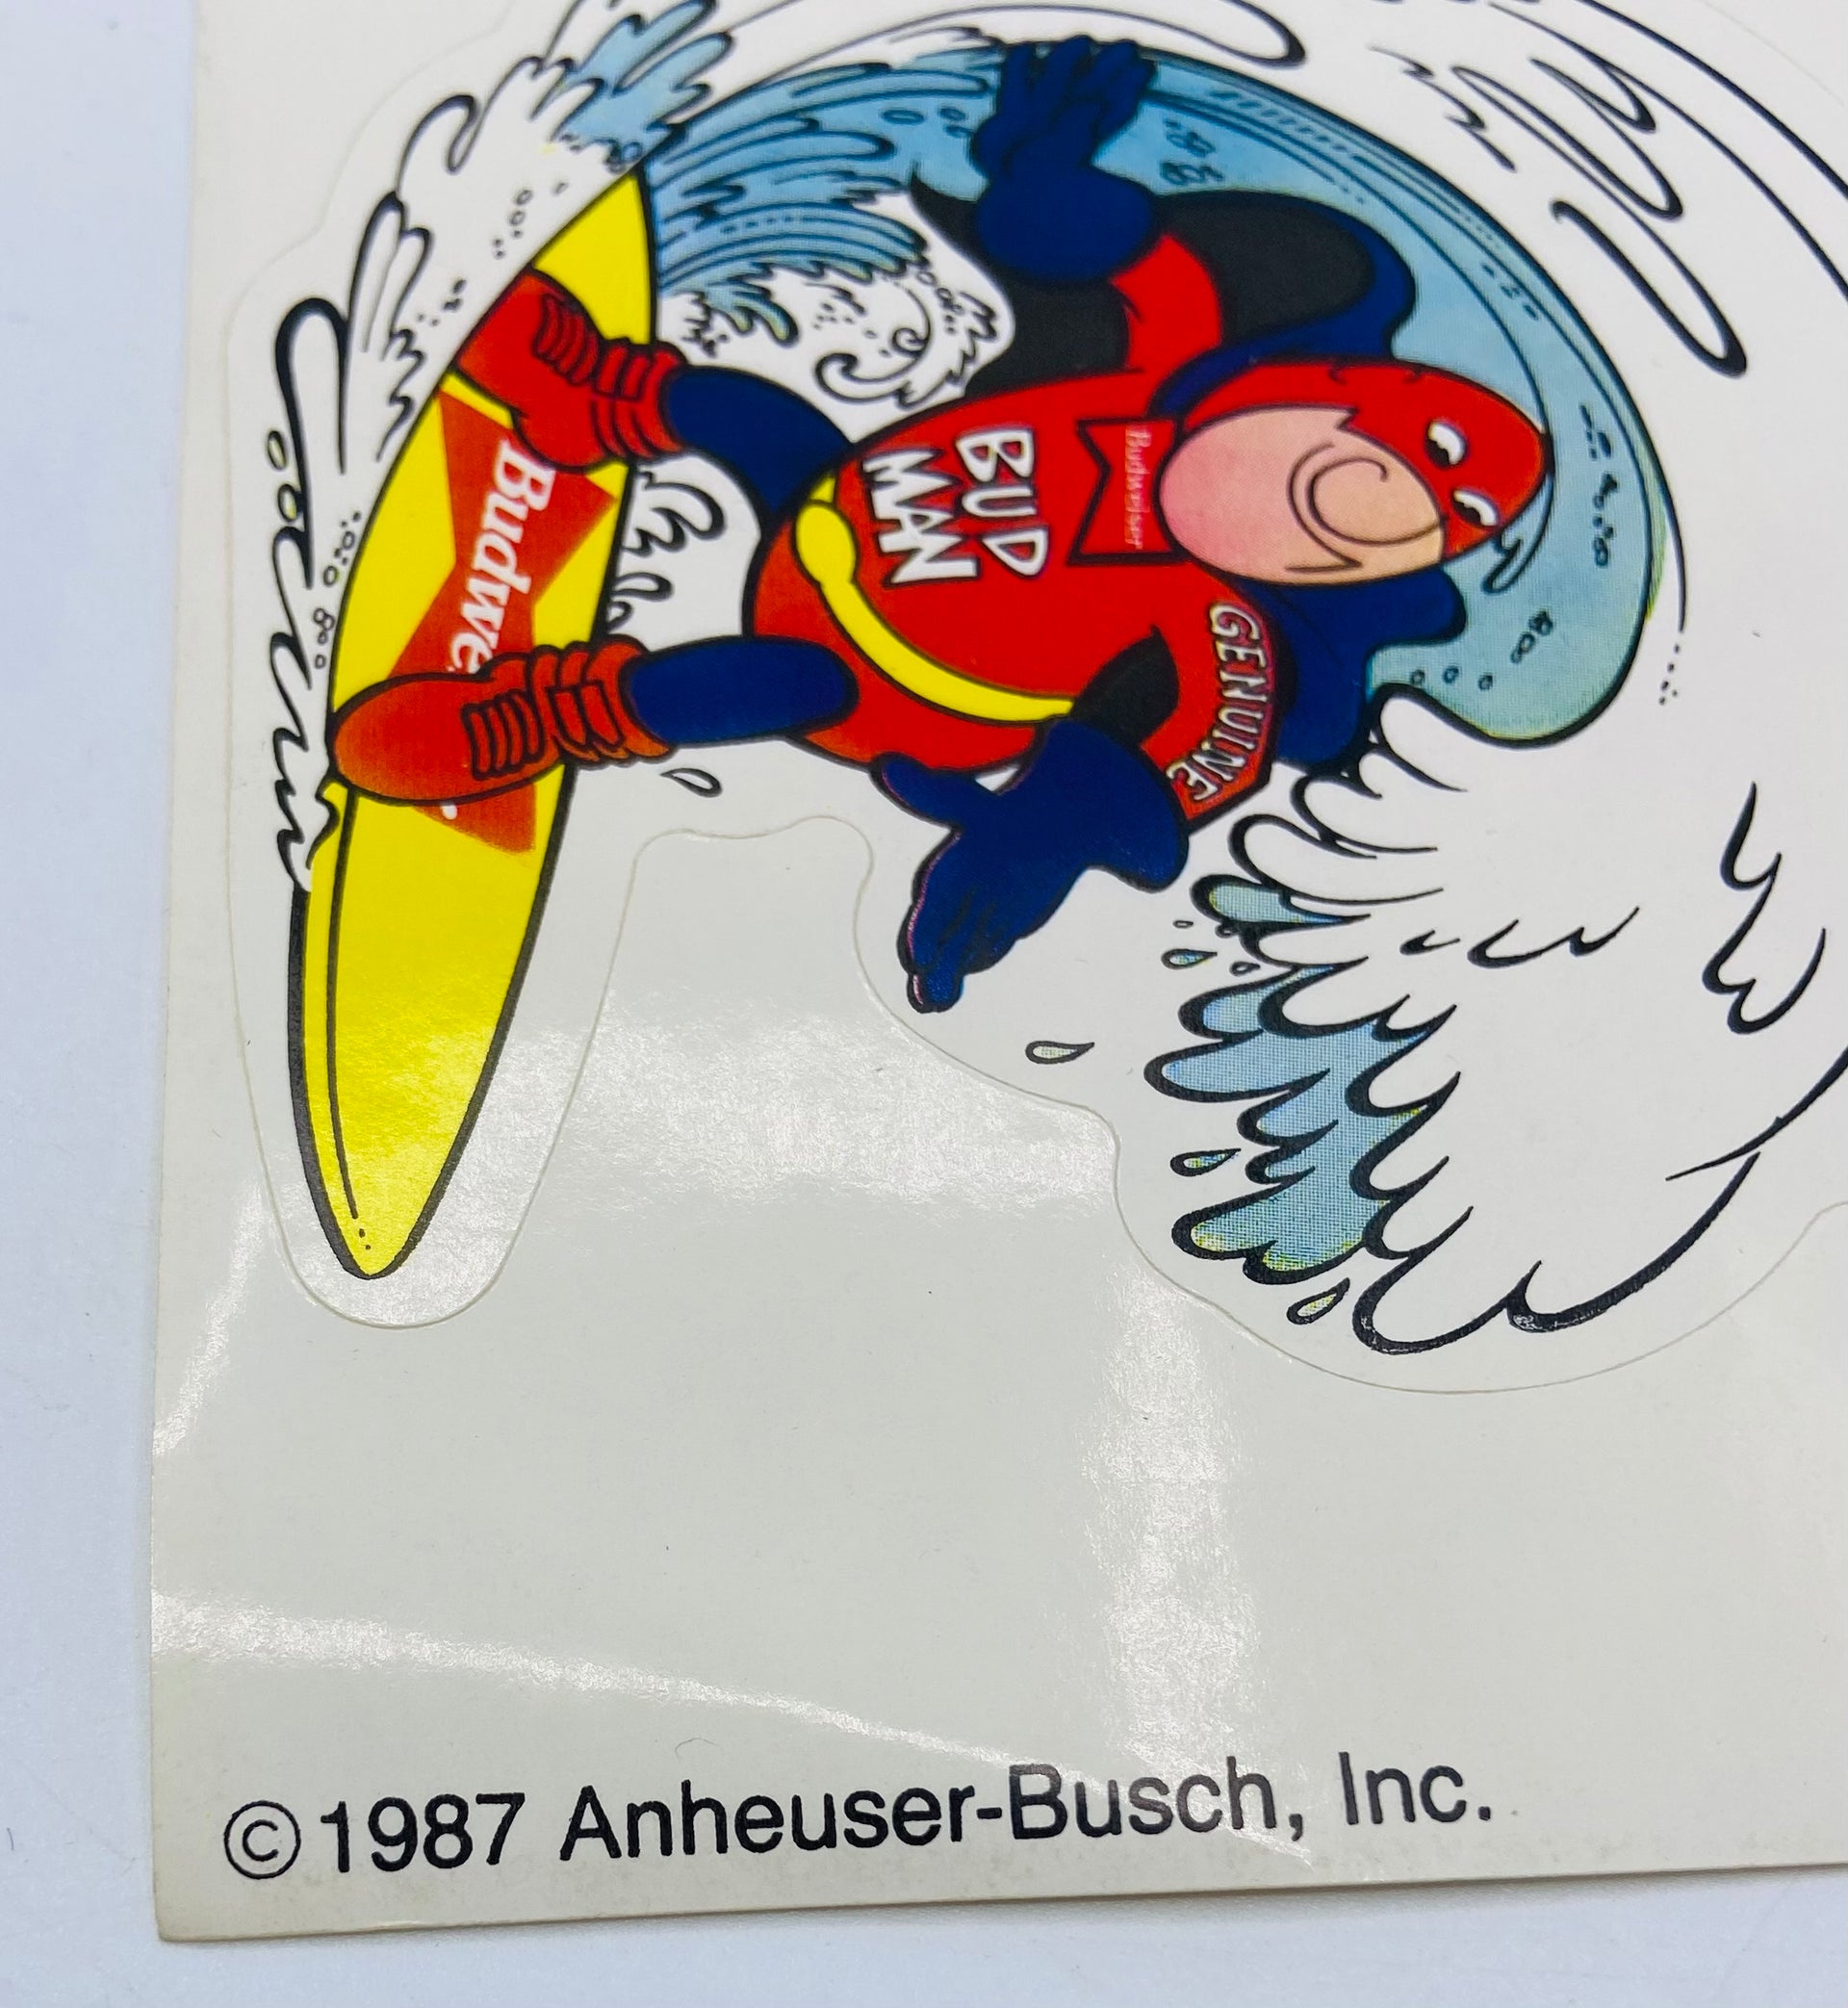 Sheet of Budweiser Budman stickers Bauersachs’ Timeless Toys